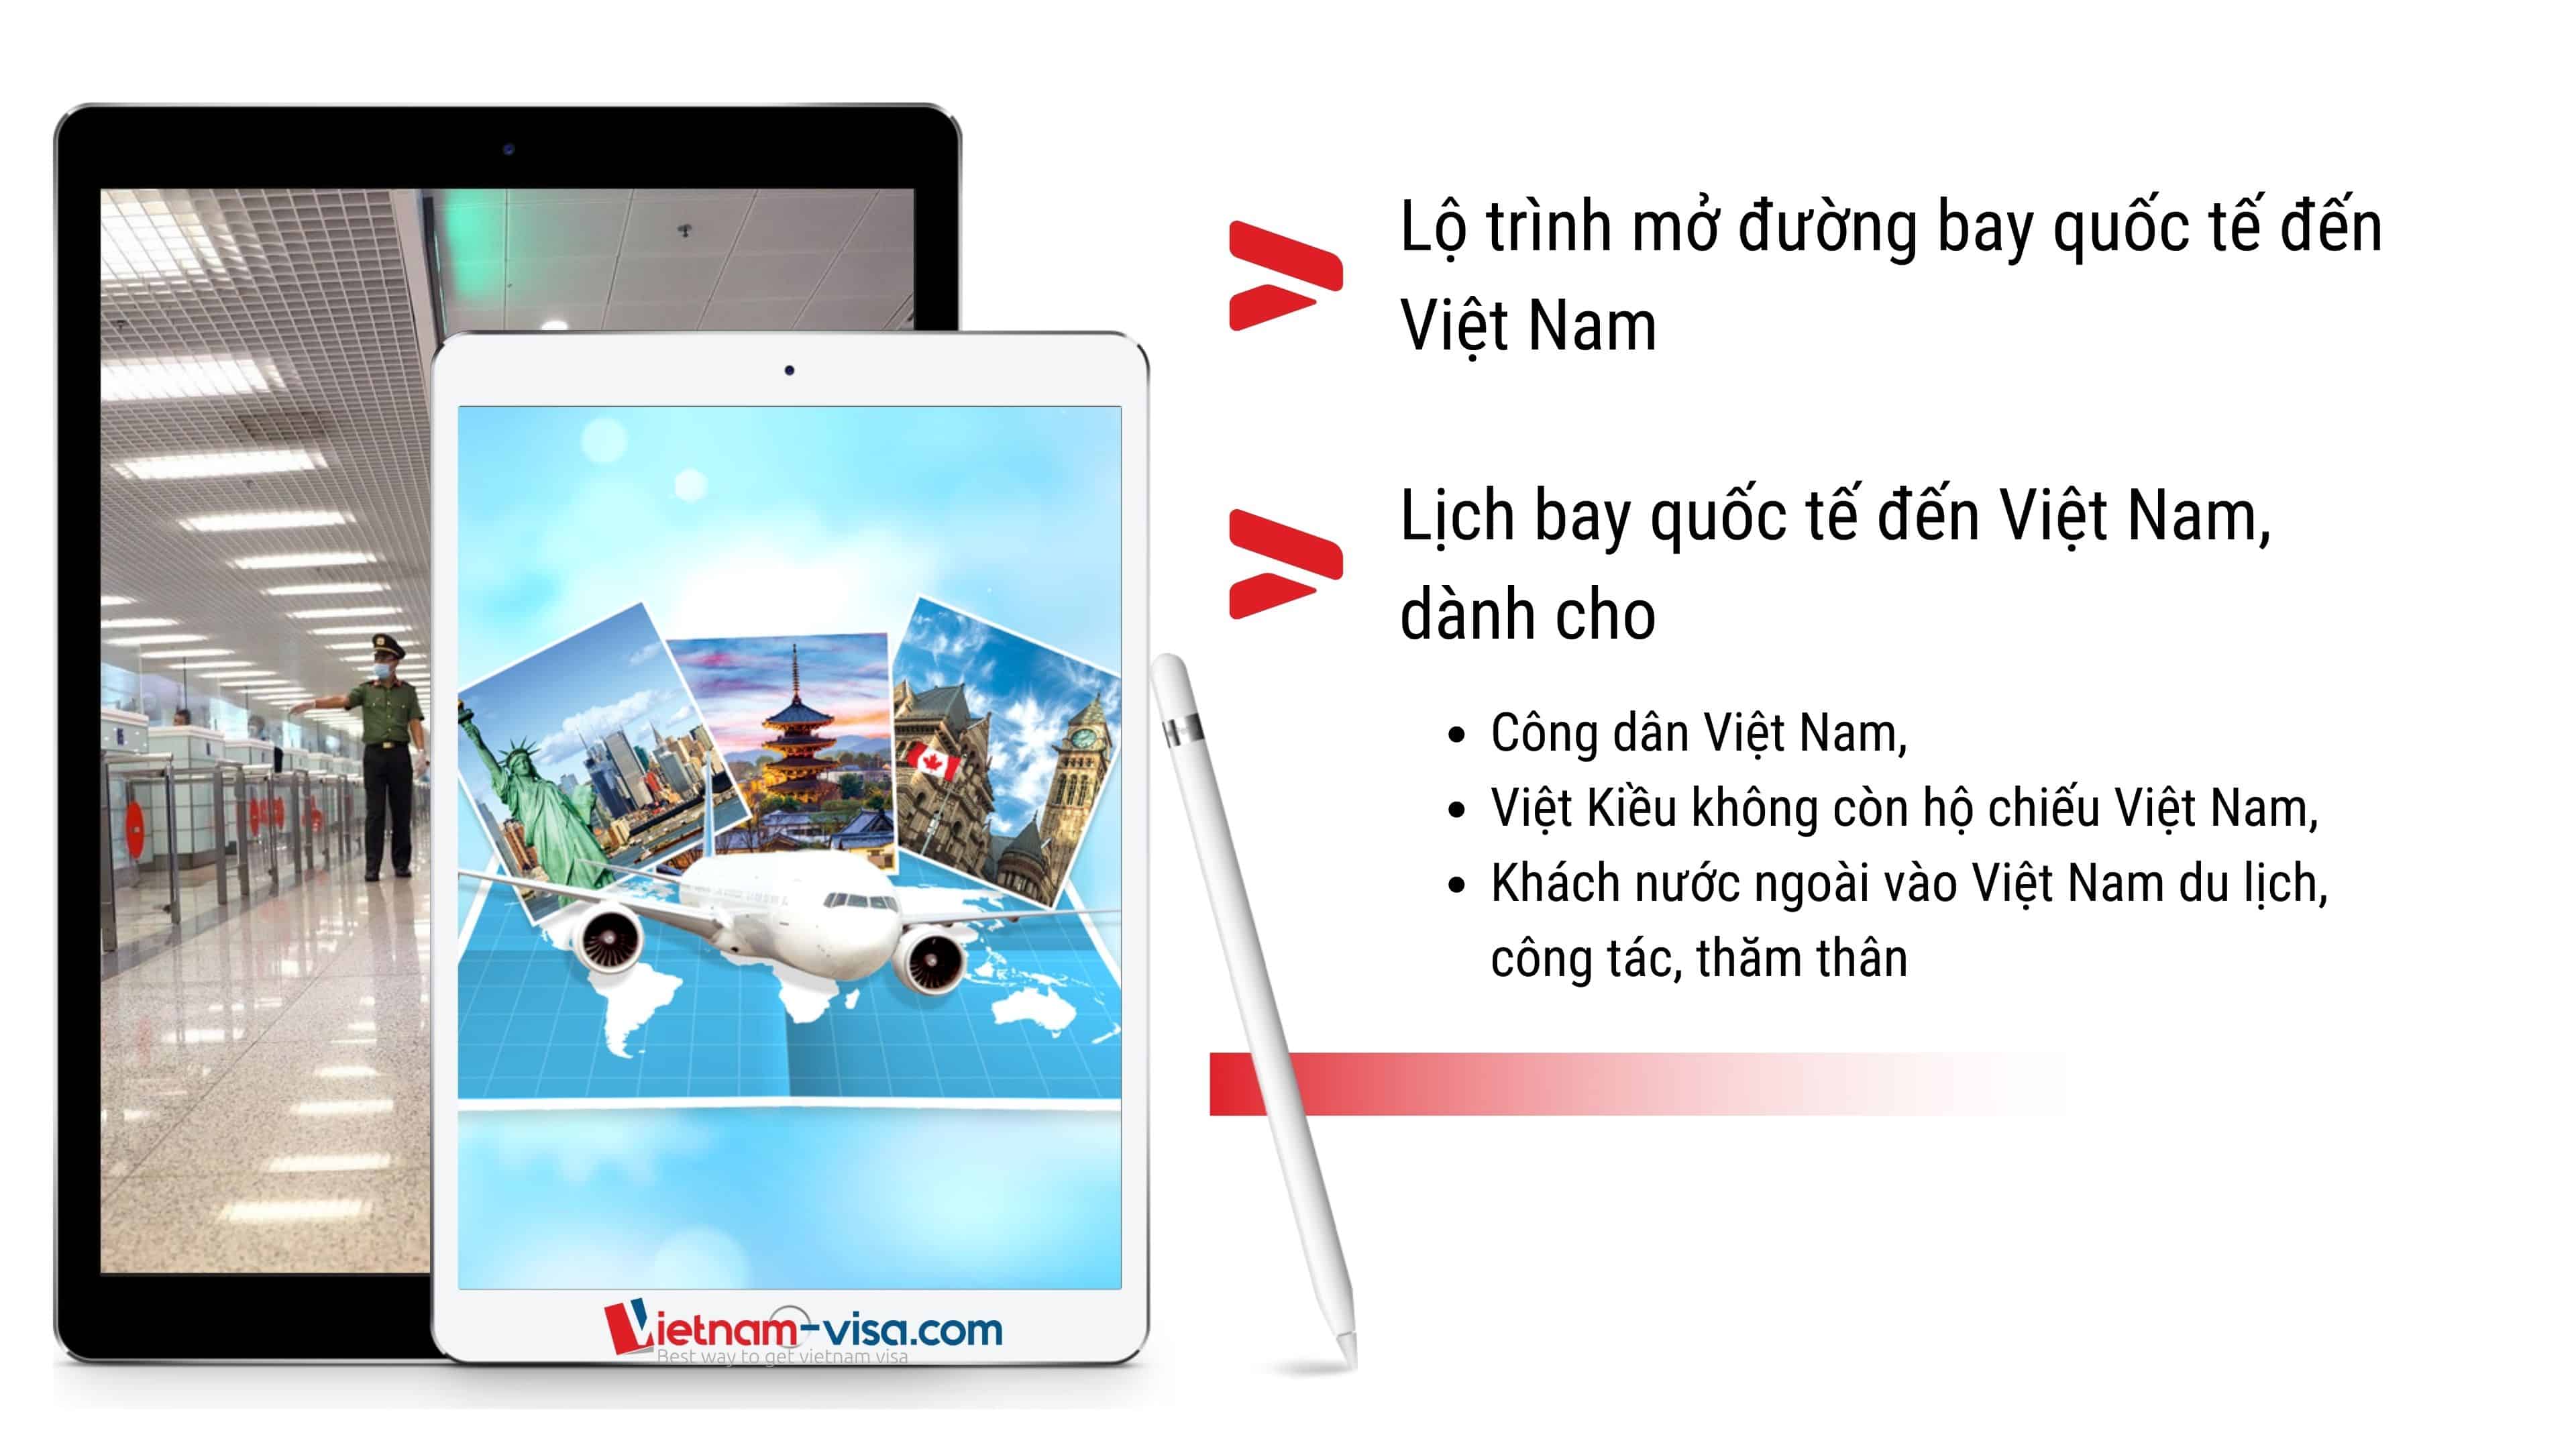 Lộ trình mở đường bay quốc tế đến Việt nam và Lịch bay quốc tế đến Việt Nam mới nhất